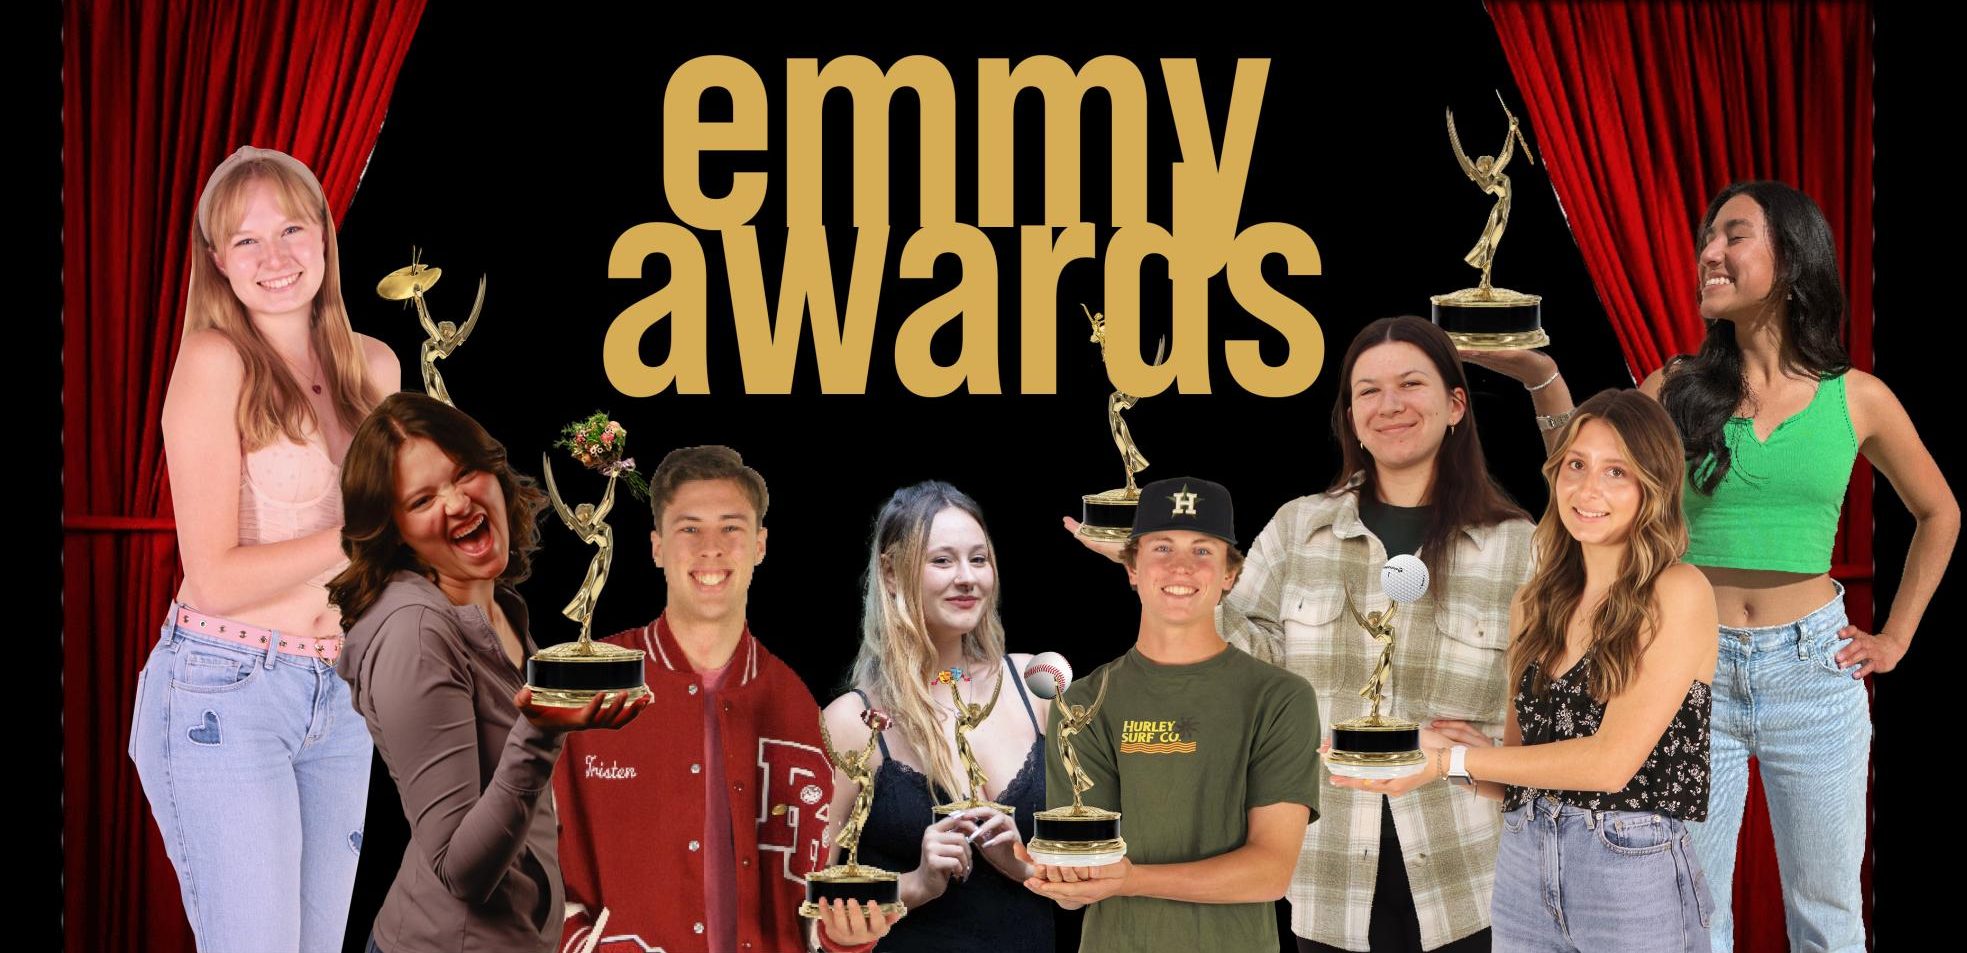 Emmy Awards: Mini Features On Award Winning Bearcats